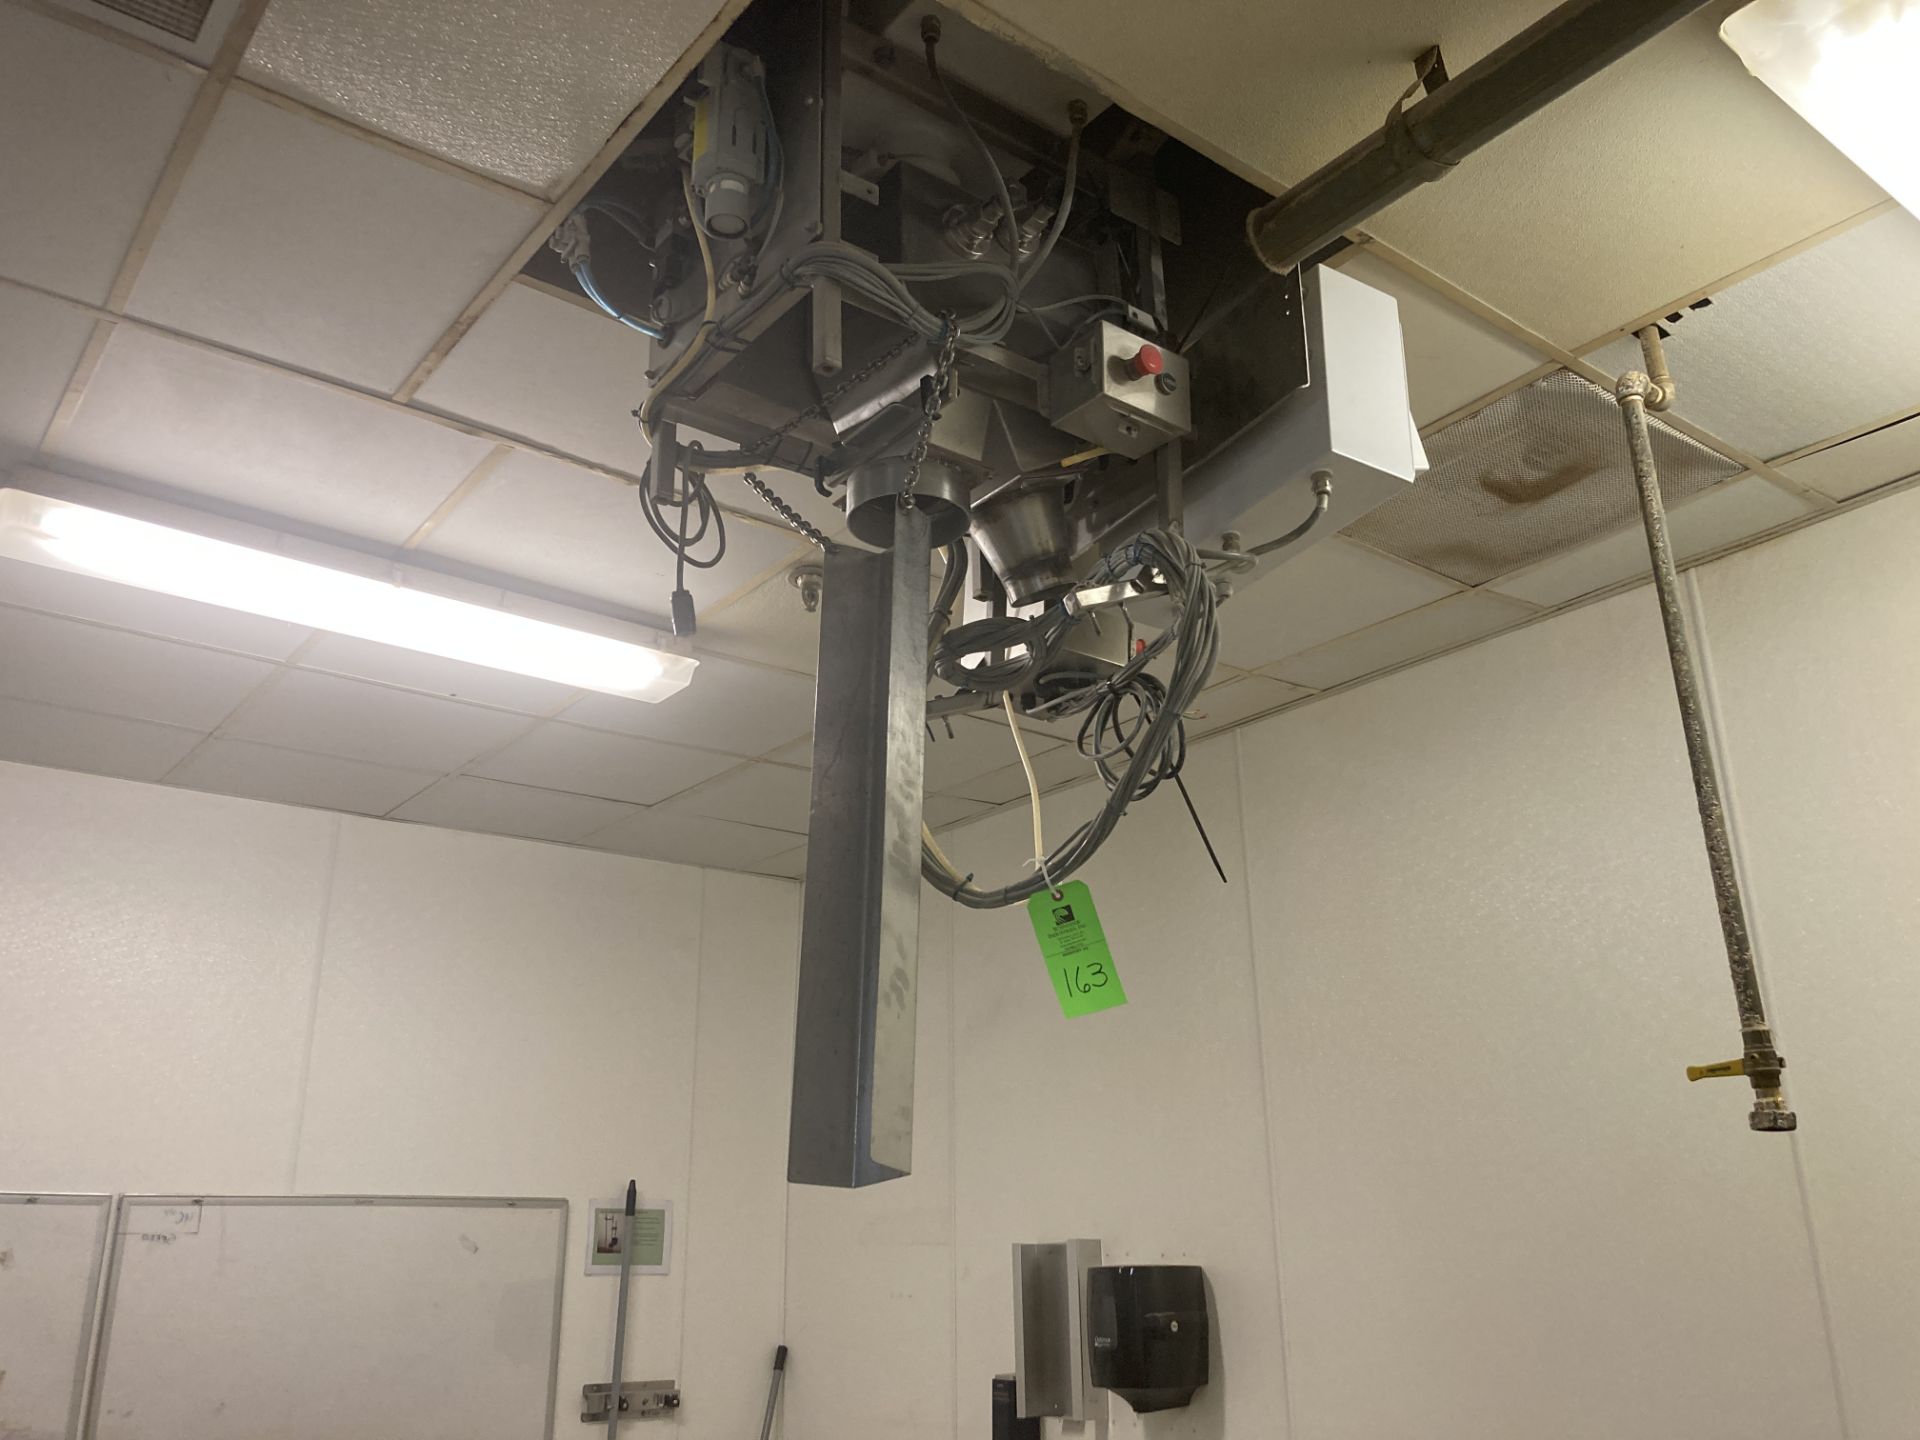 Mettler Toledo Safeline metal detector Rigging Fee: $ 425